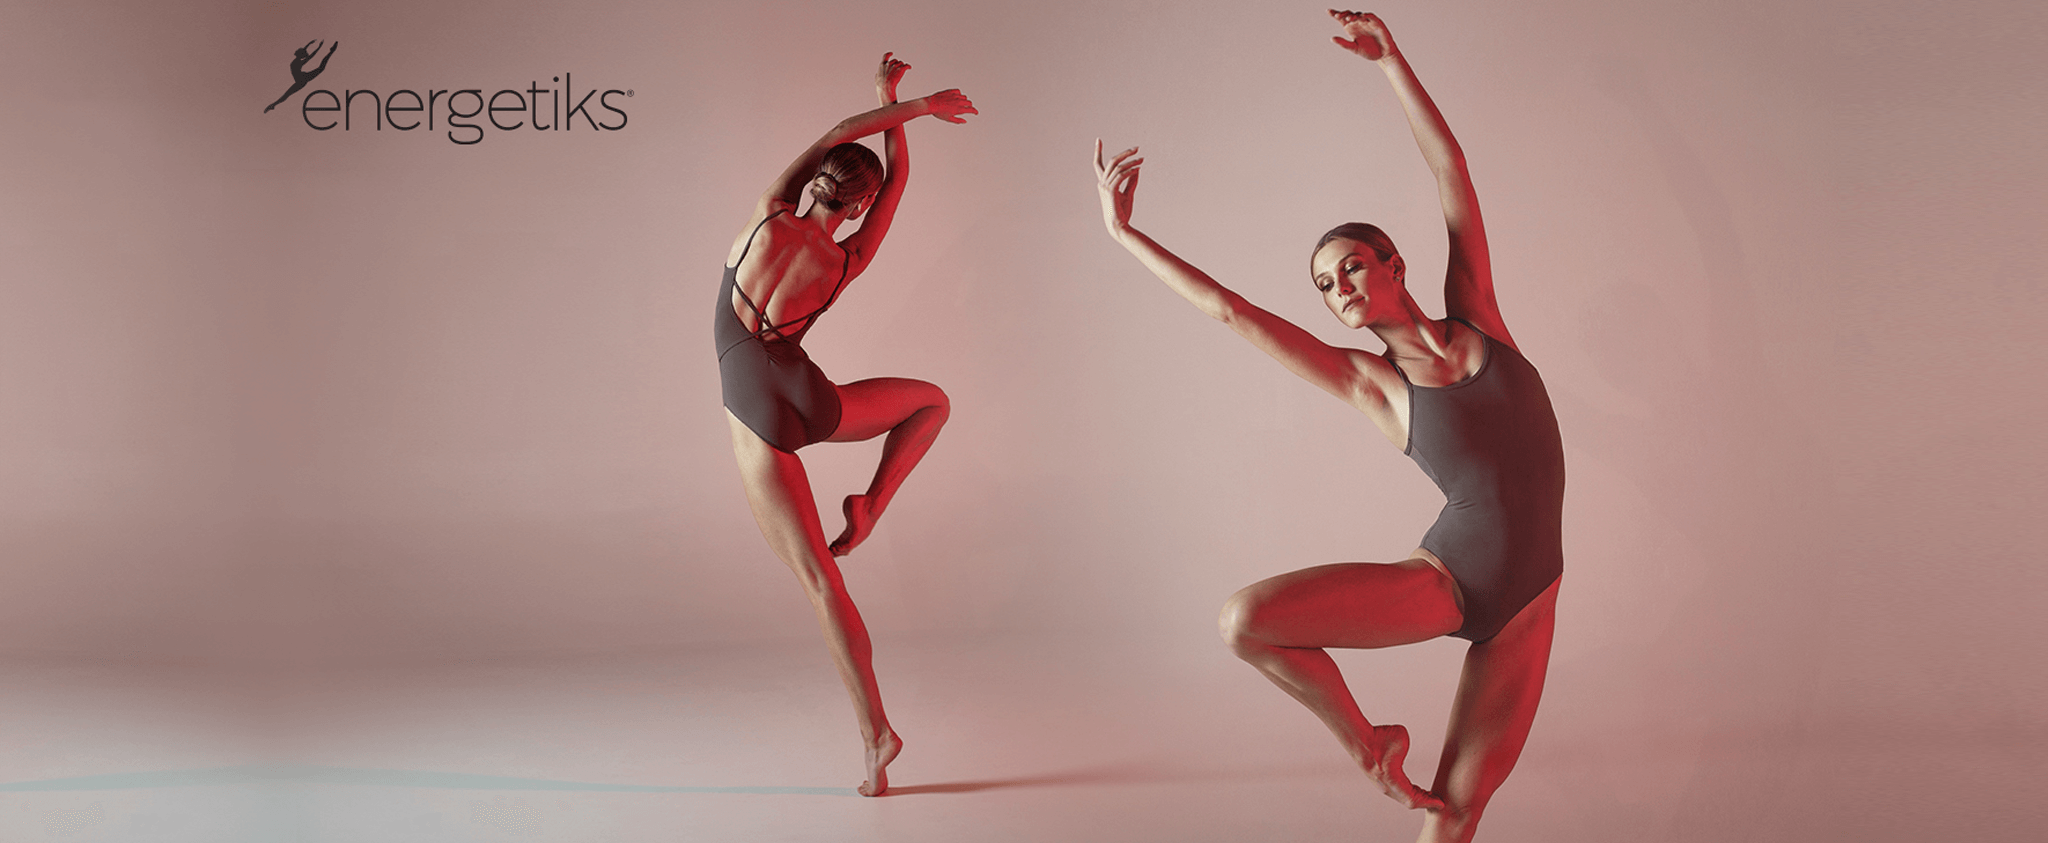 Dance School Uniforms Australia - Red Oak Teamwear